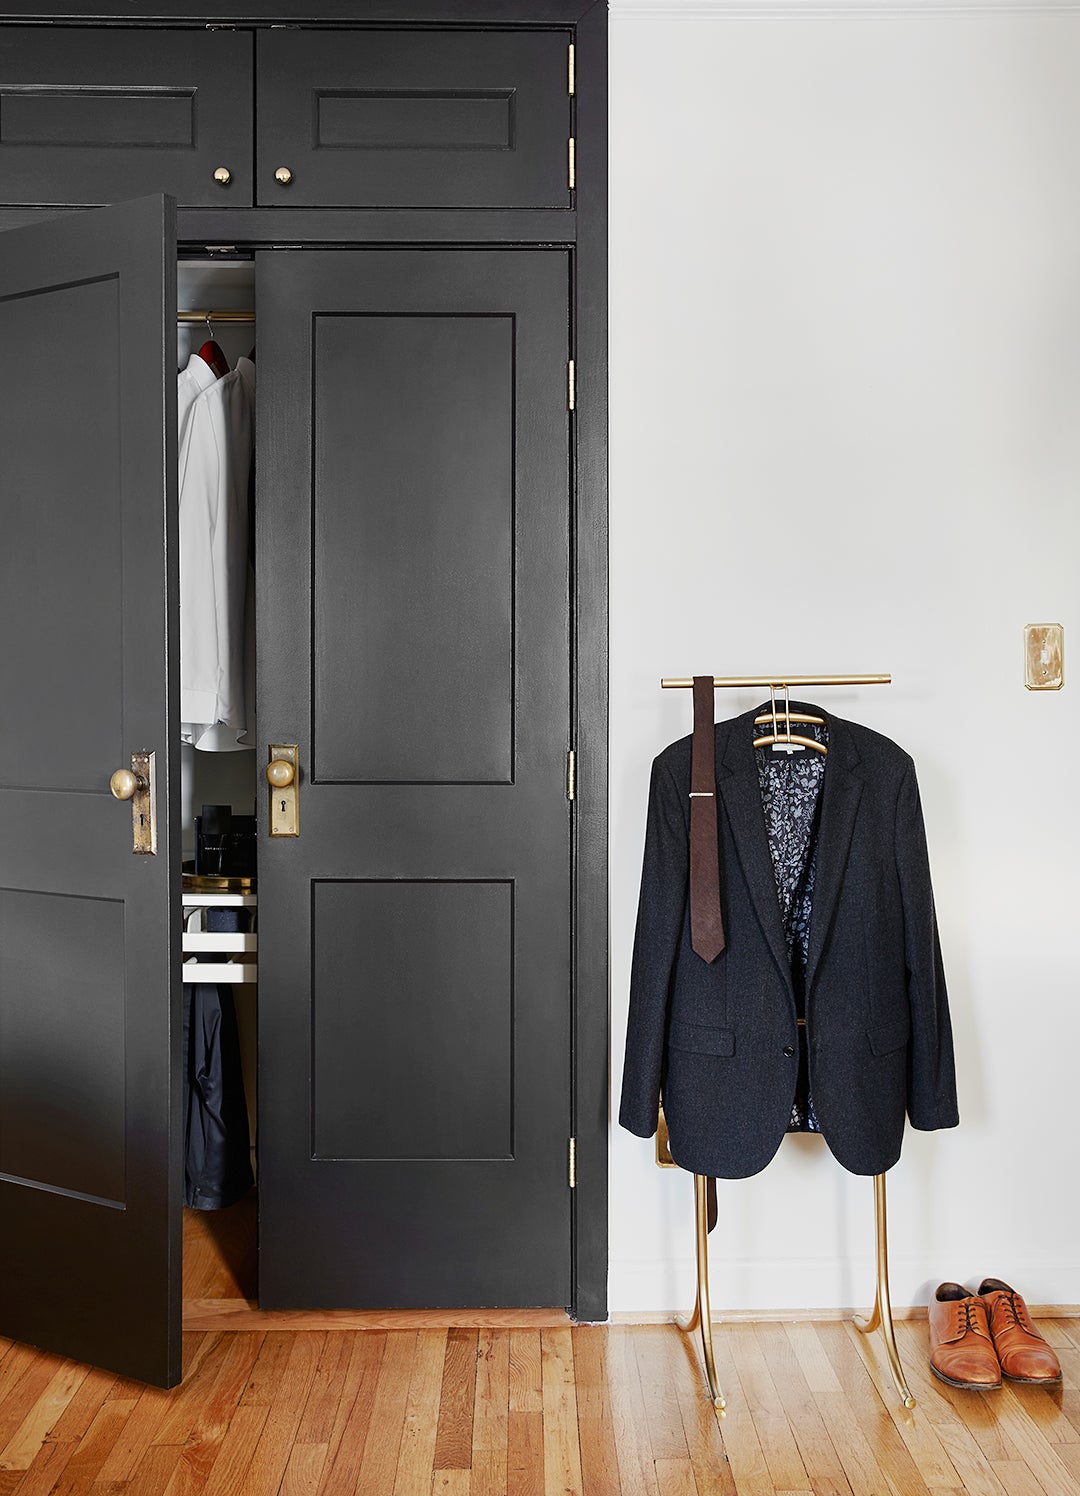 mans suit next to black closet